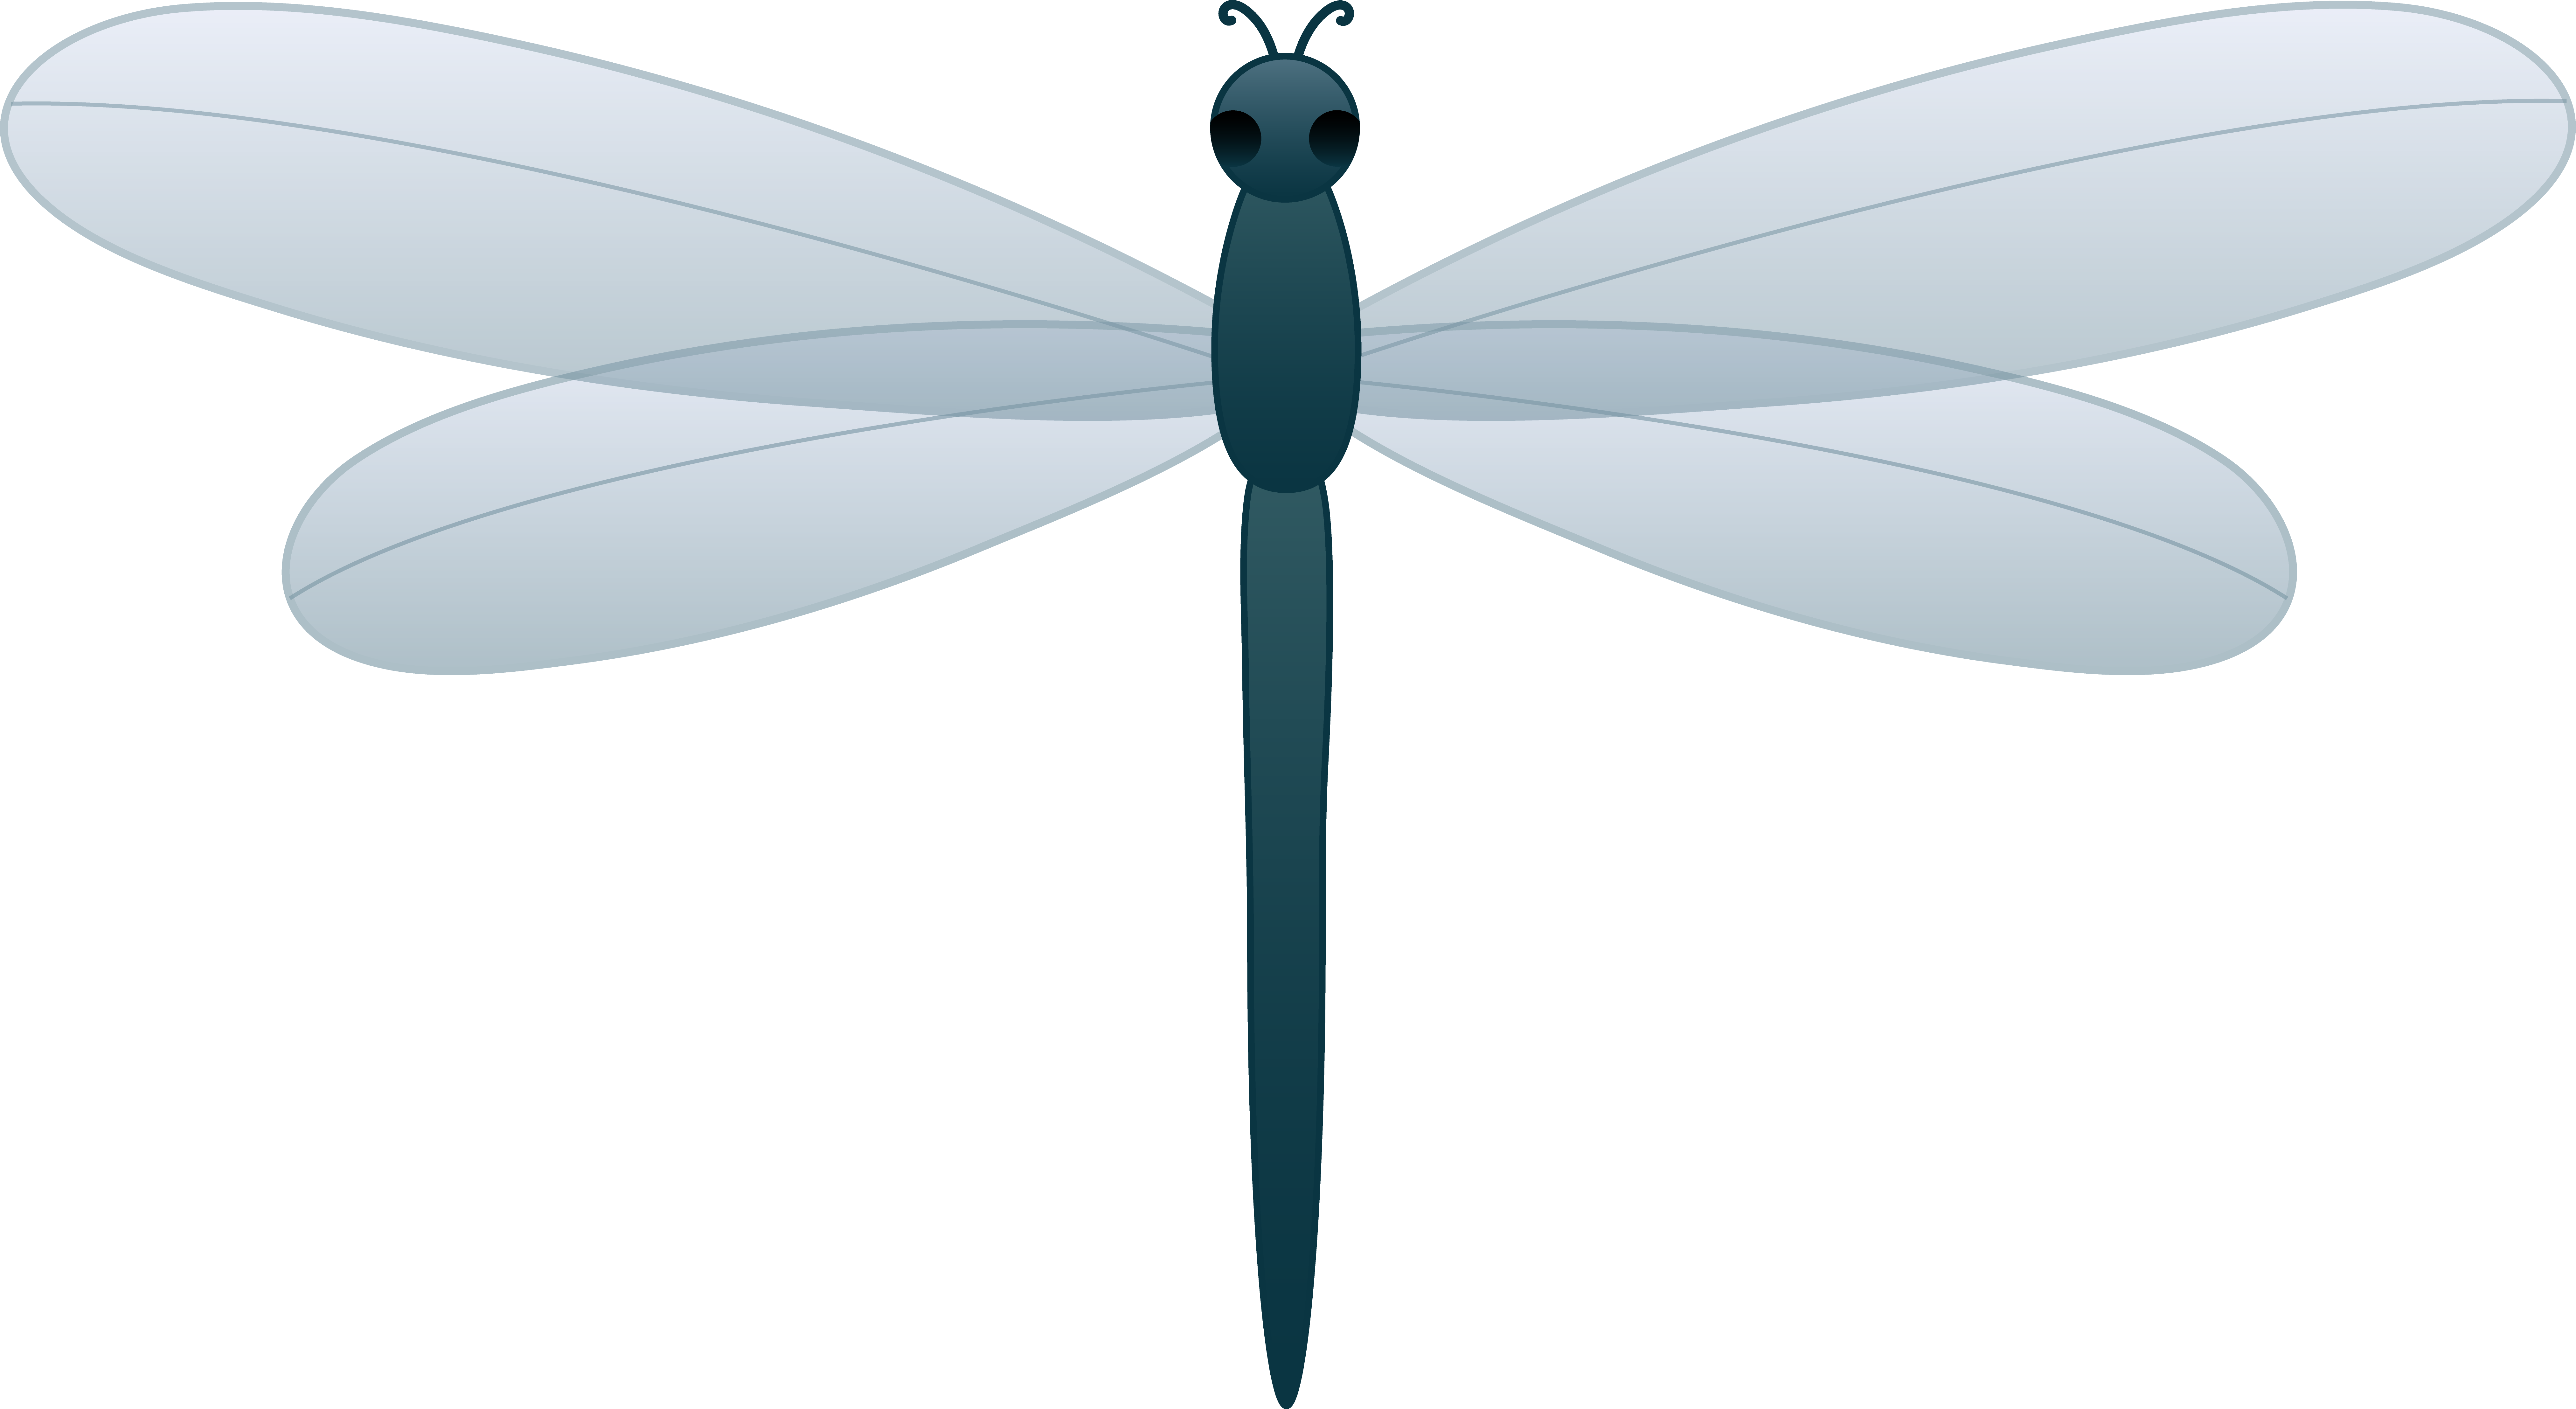 Dragonfly Clip Art